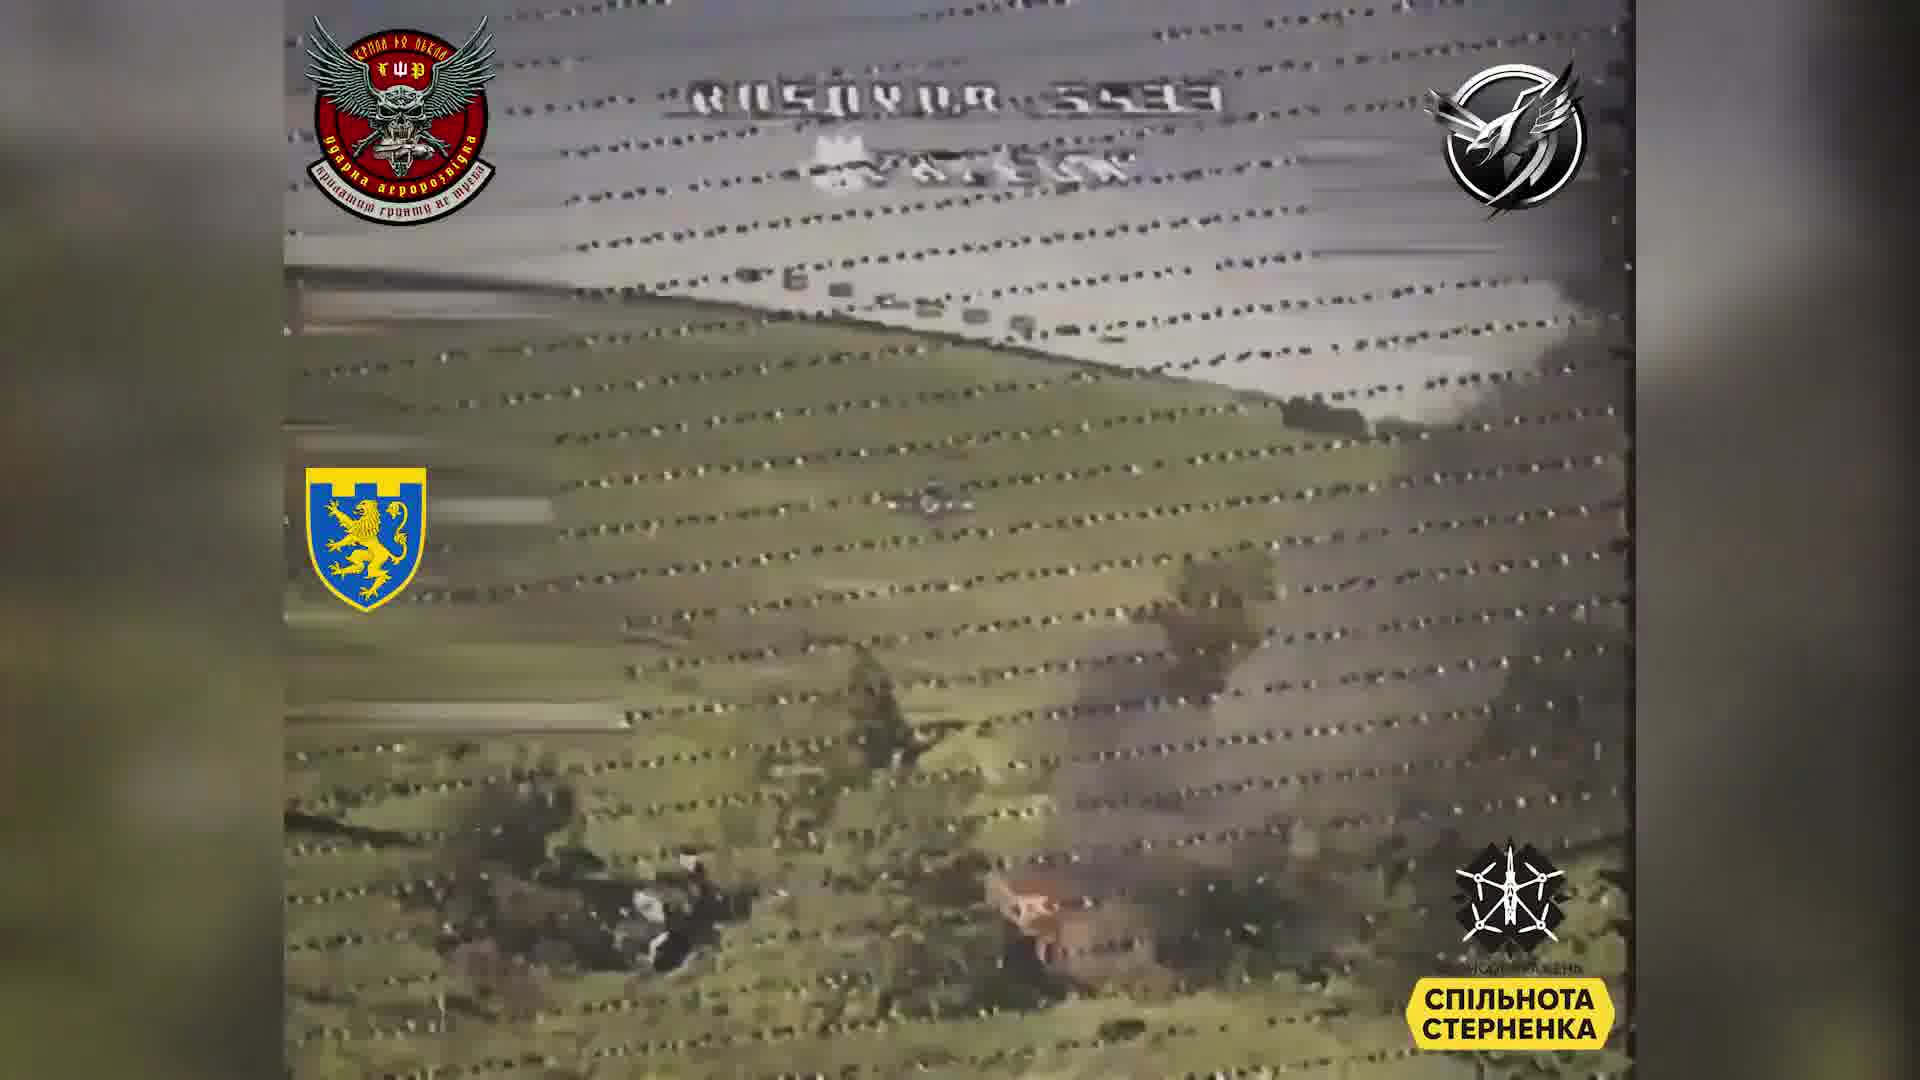 Ukrainische Verteidigungskräfte haben eine russische Militärkolonne in der Region Kursk nahe der russischen Grenze zerstört